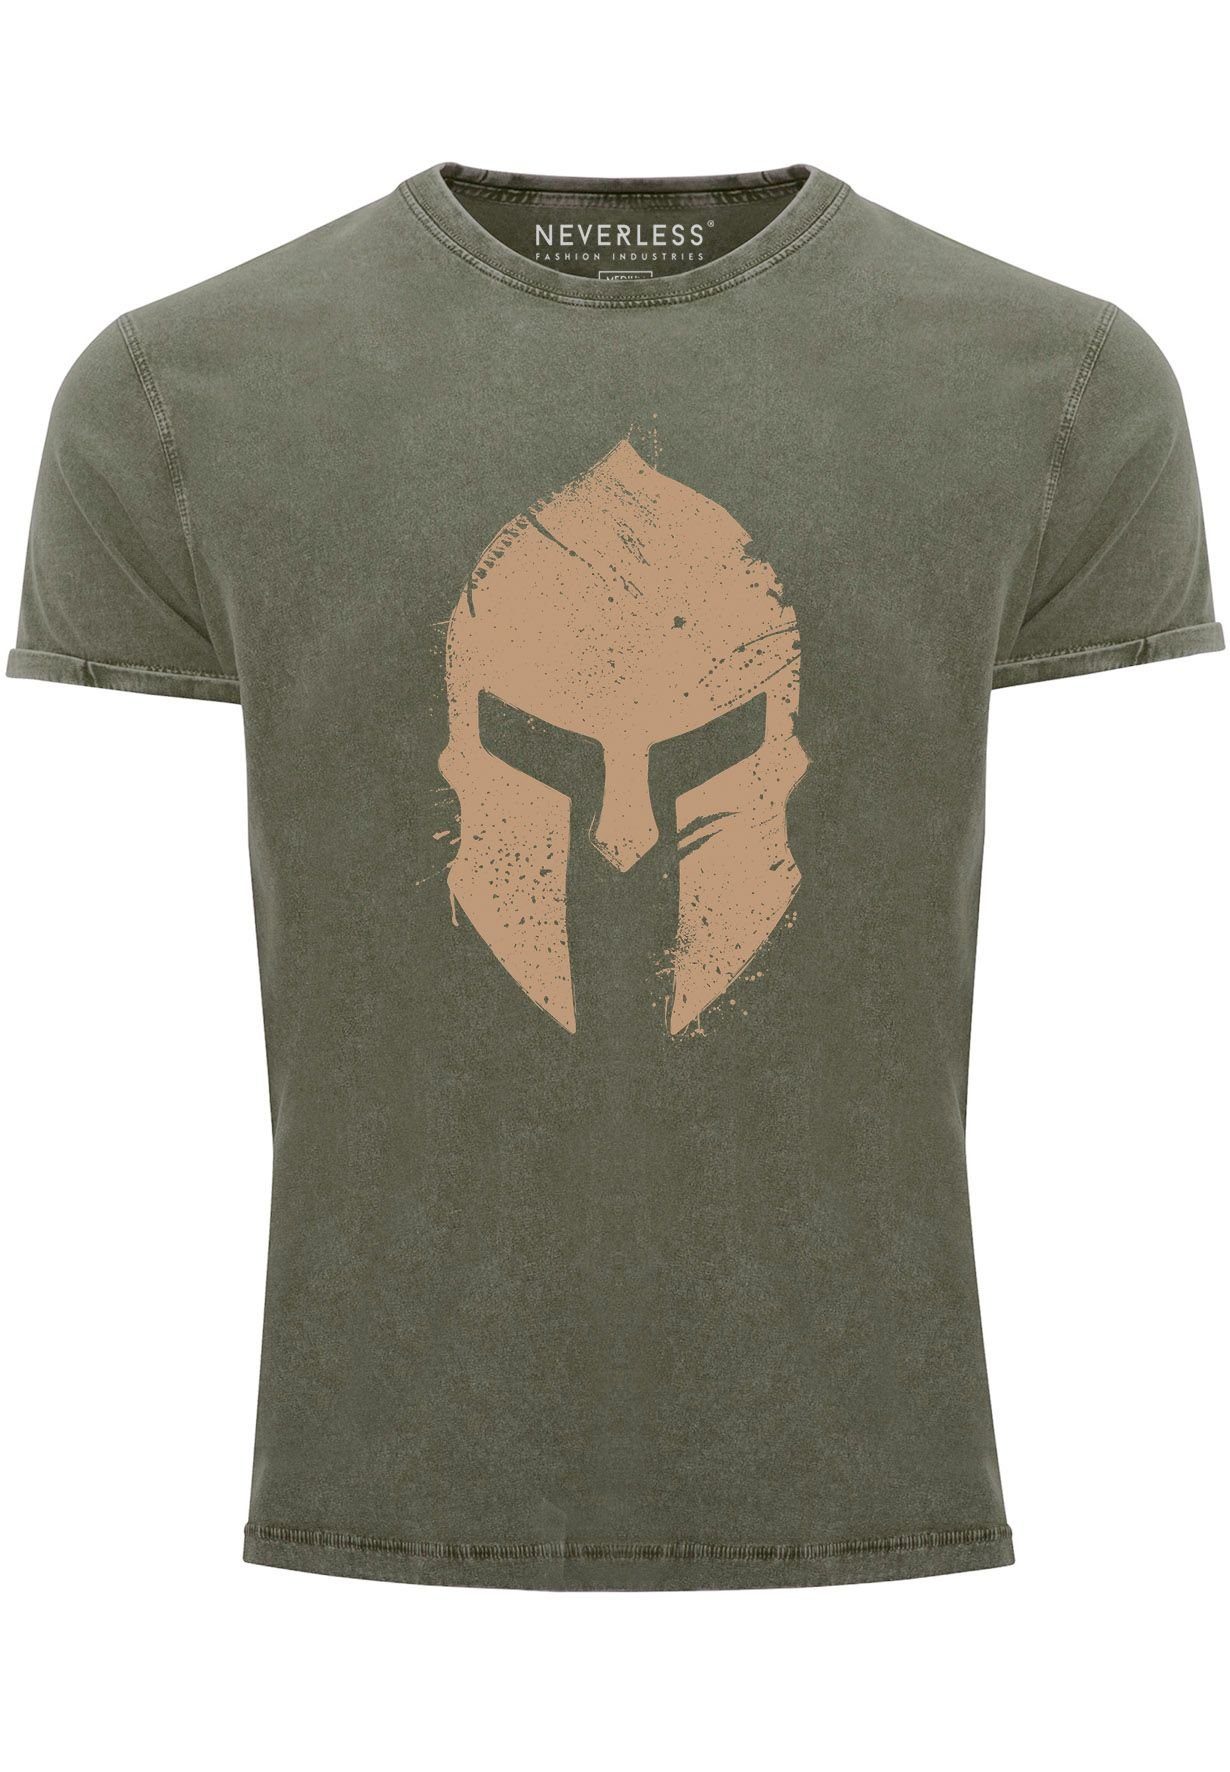 Neverless Print-Shirt Herren Vintage Shirt Print Sparta-Helm Aufdruck Gladiator Krieger Warr mit Print oliv